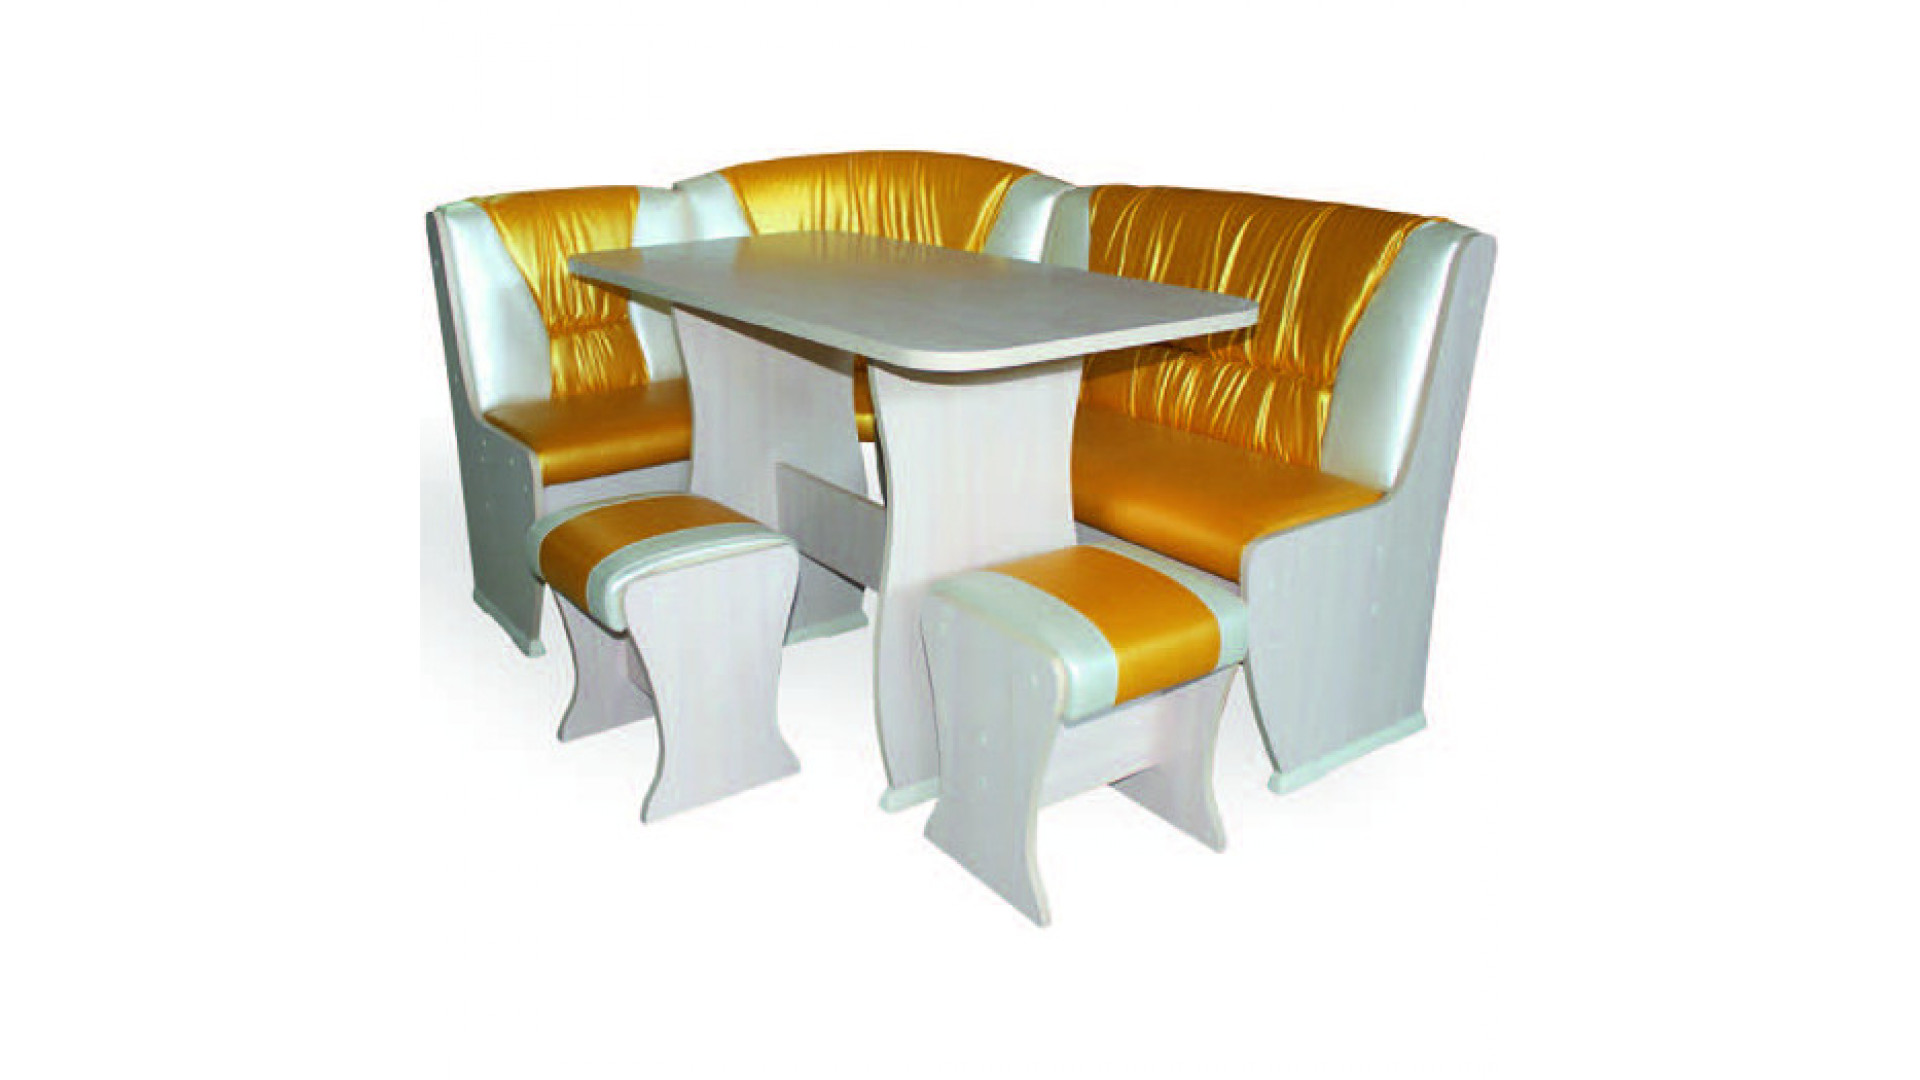 Уголок купить симферополь. Уголок ку 2 комфортная мебель. Уголок для столовой. Кухонный уголок желтый.